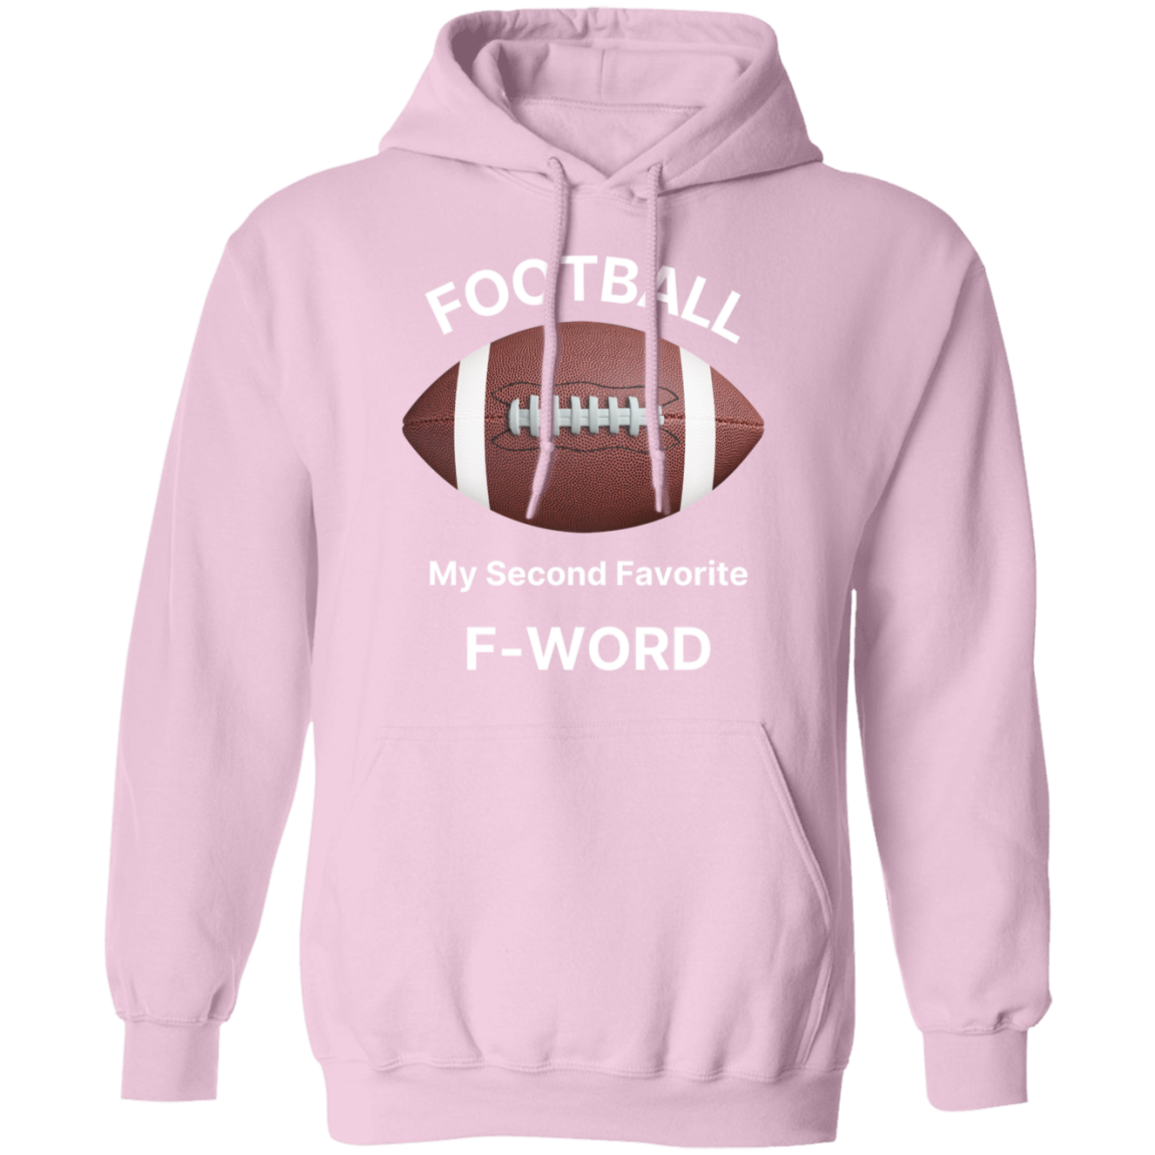 Football Is My 2nd Favorite F-Word G185 Pullover Hoodie